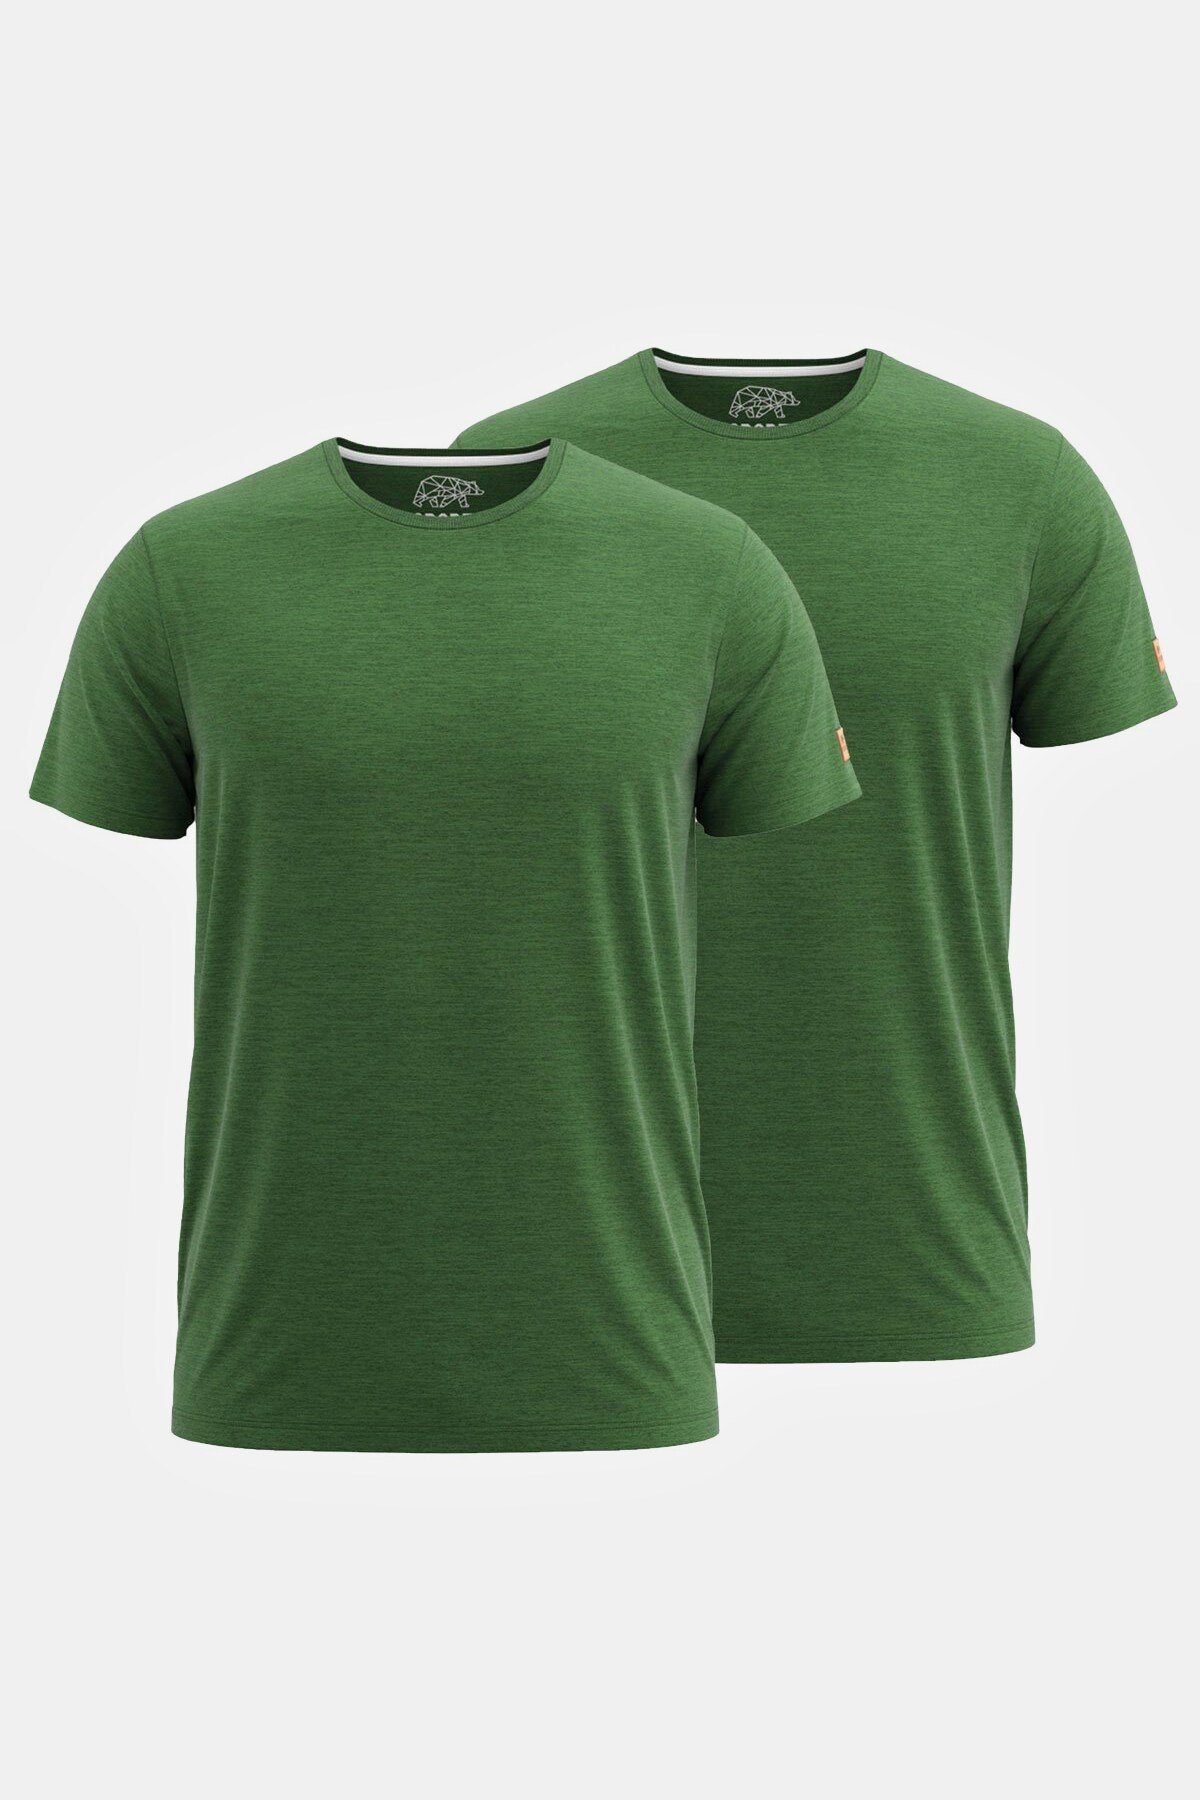 FORSBERG T-Shirt 1/2 T-Shirt grün Doppelpack